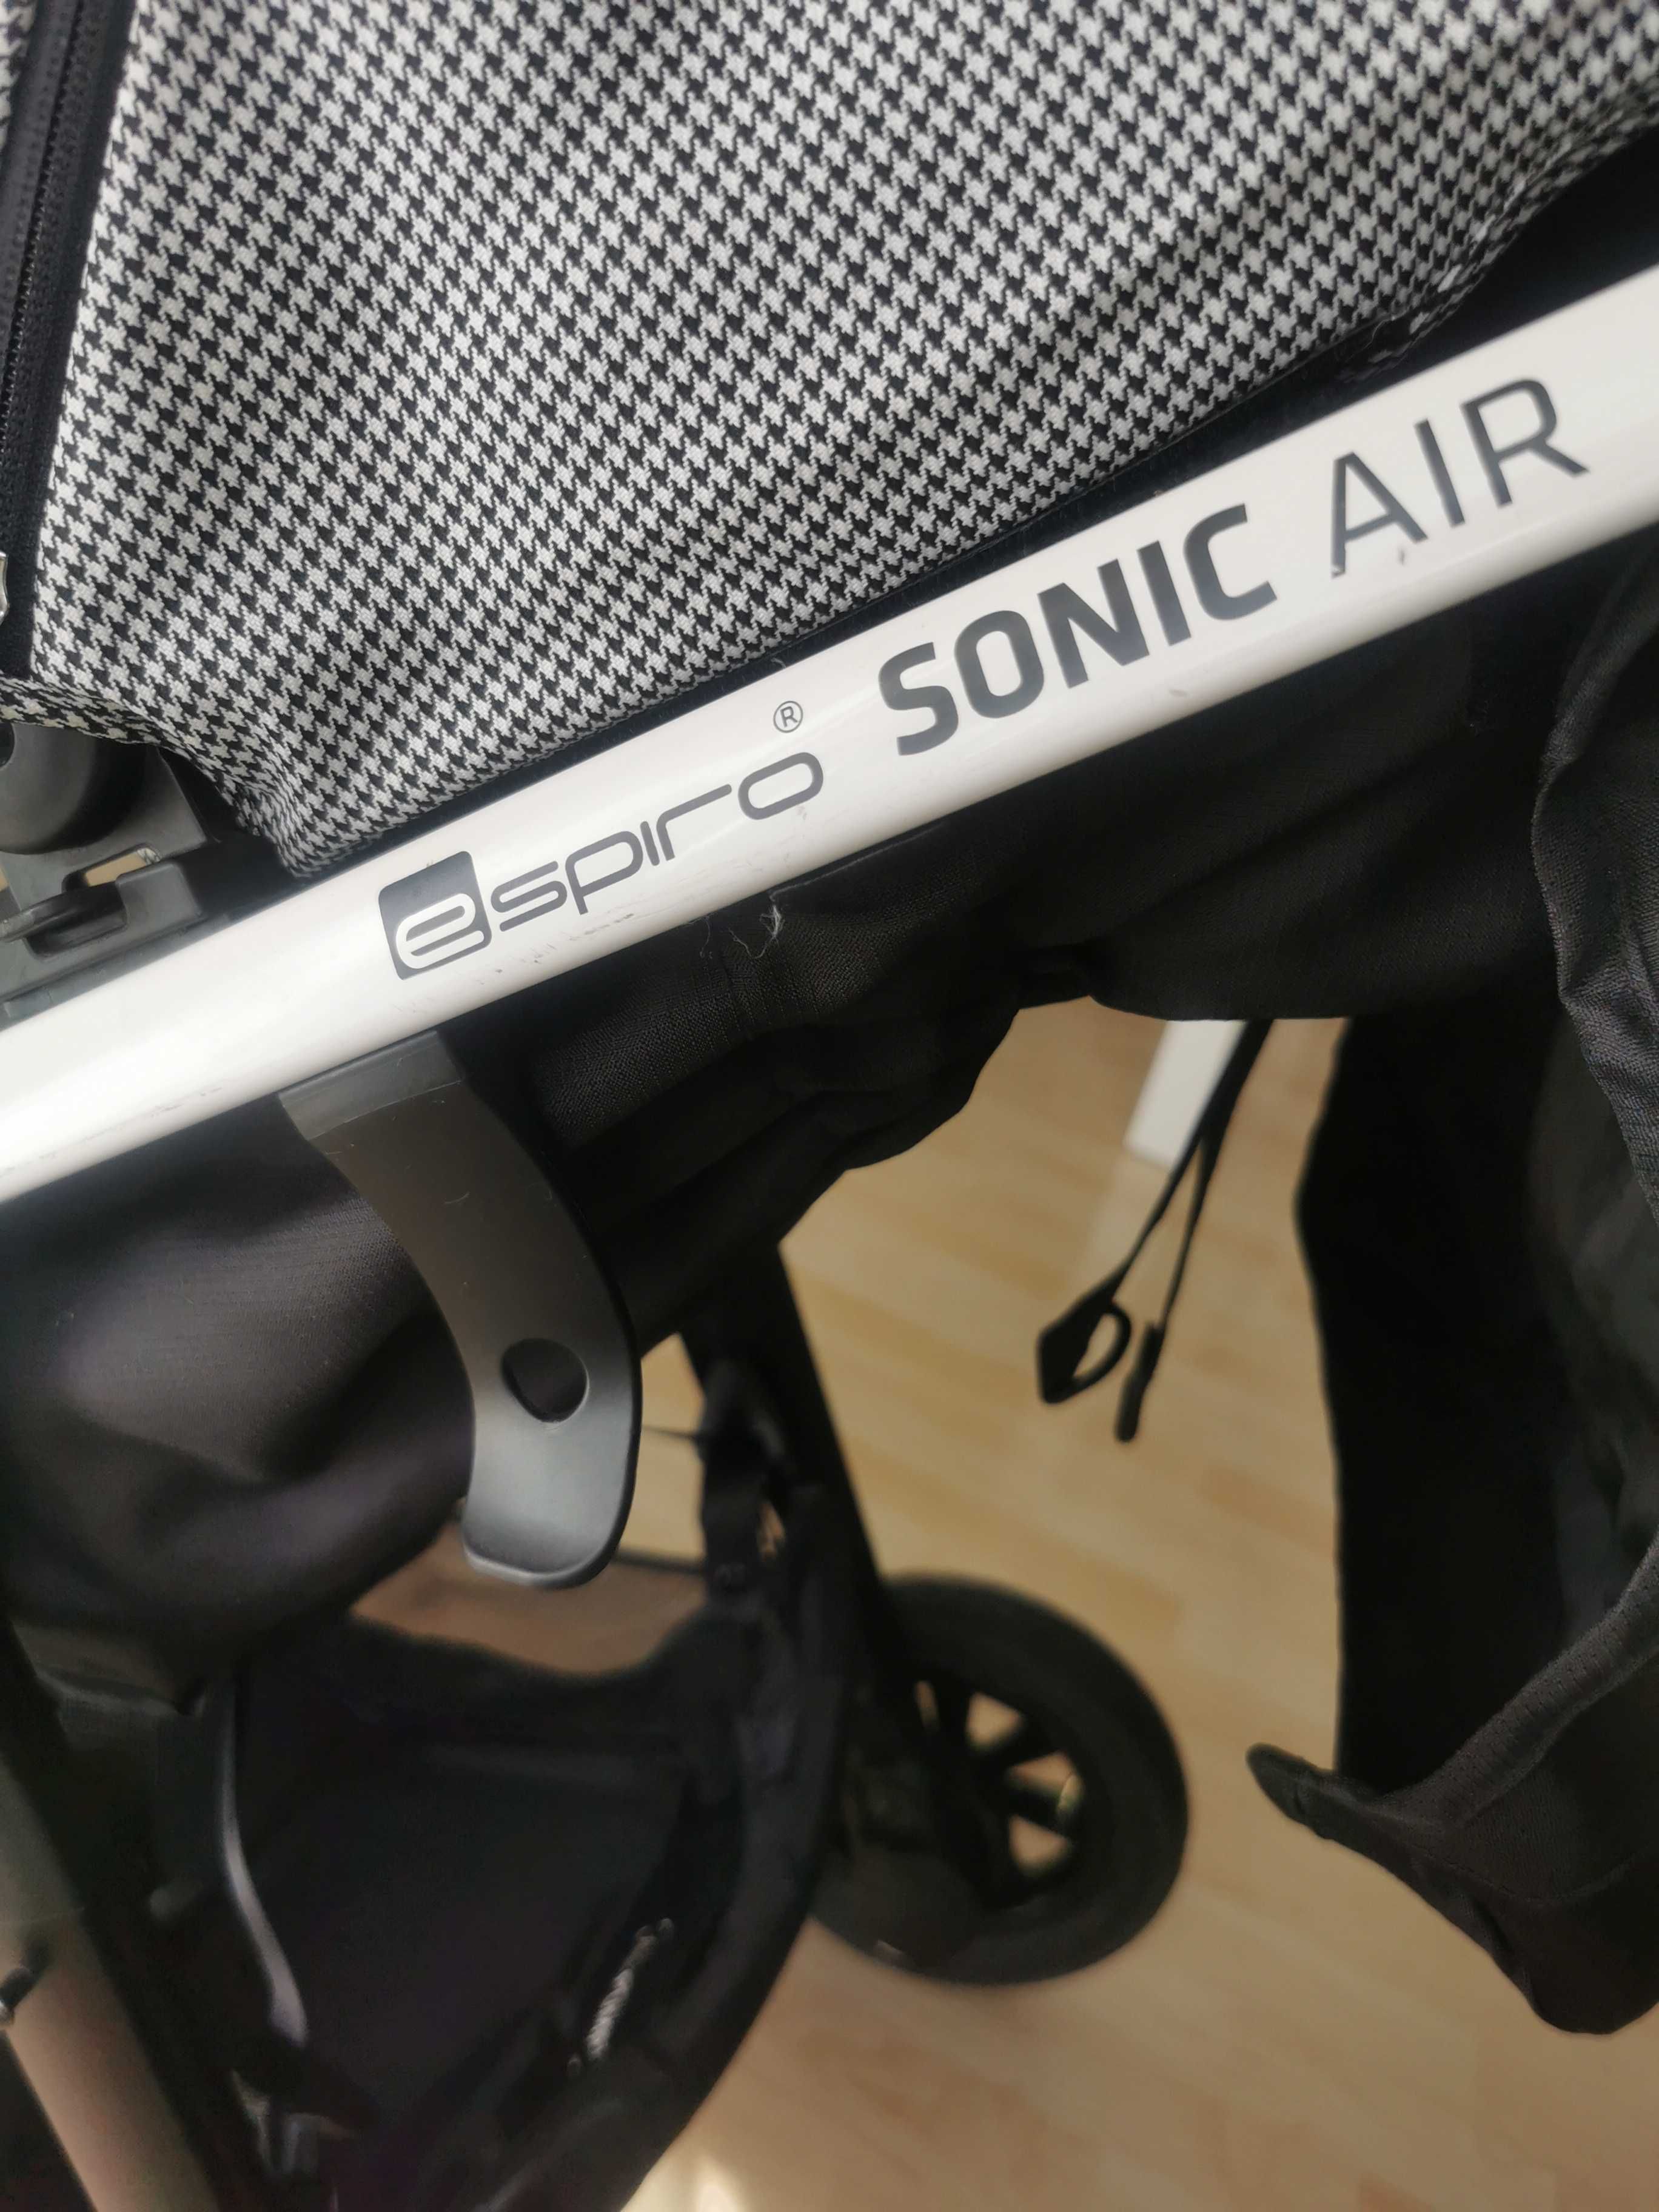 Wózek spacerowy Espiro Sonic air